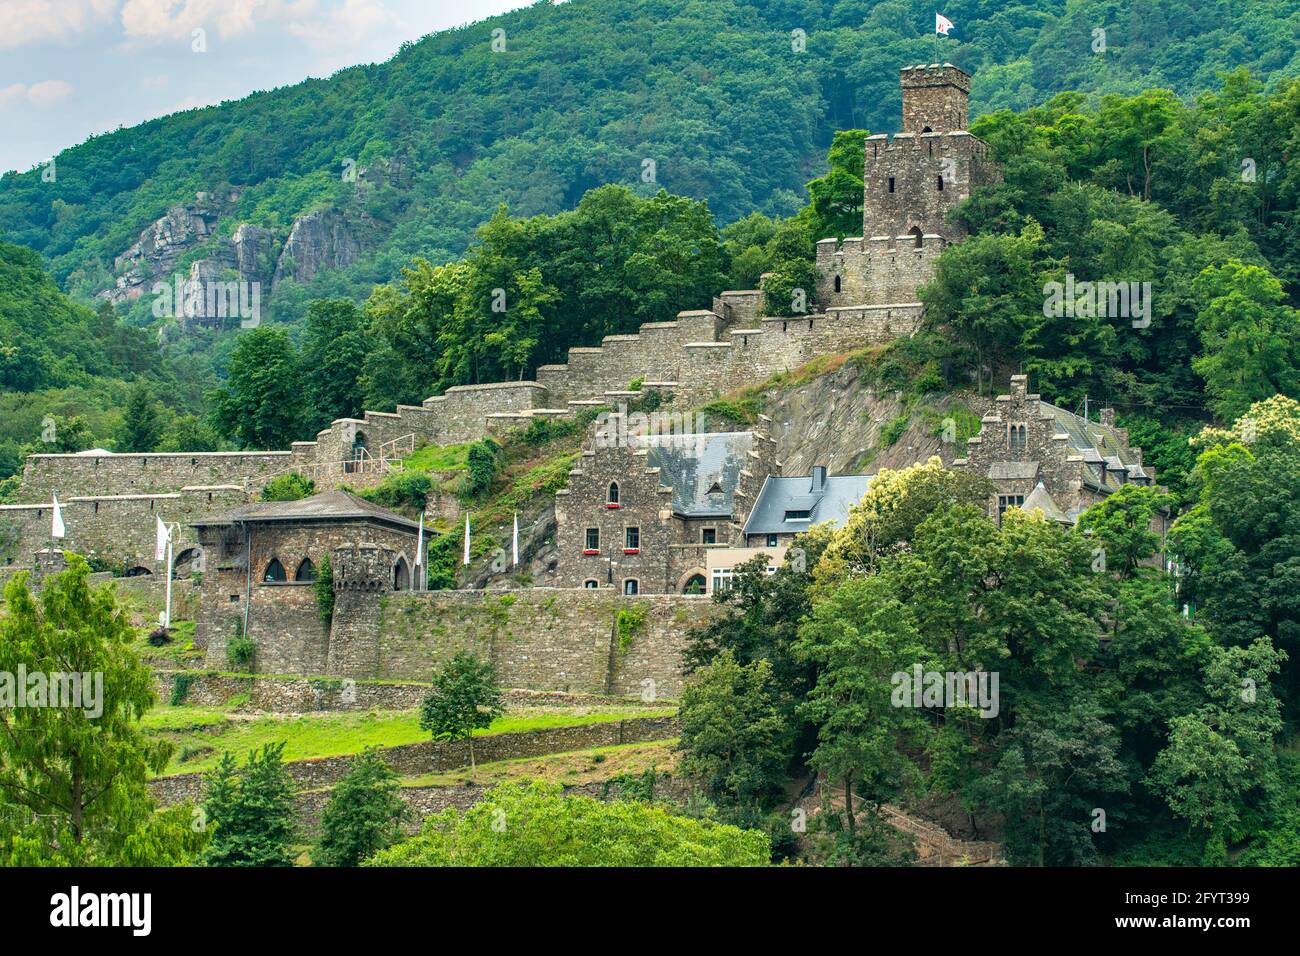 Burg Rheichenstein, Trechtinghausen, Rhineland-Palatinate, Germany Stock Photo